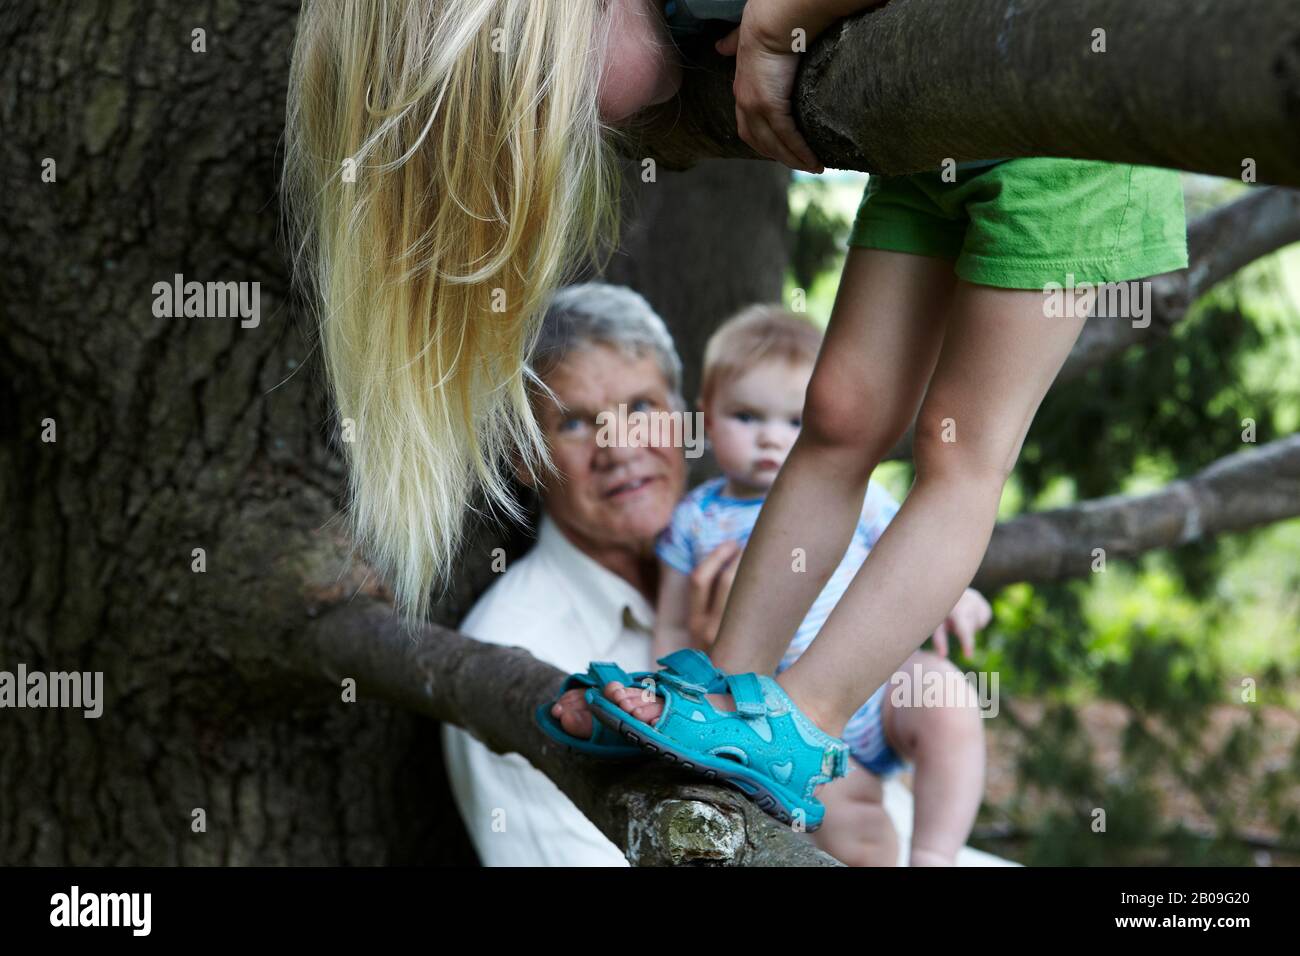 Großvater hält seinen 7 Monate alten Enkel, als seine 3 Jahre alte Enkelin einen Baum klettert Stockfoto